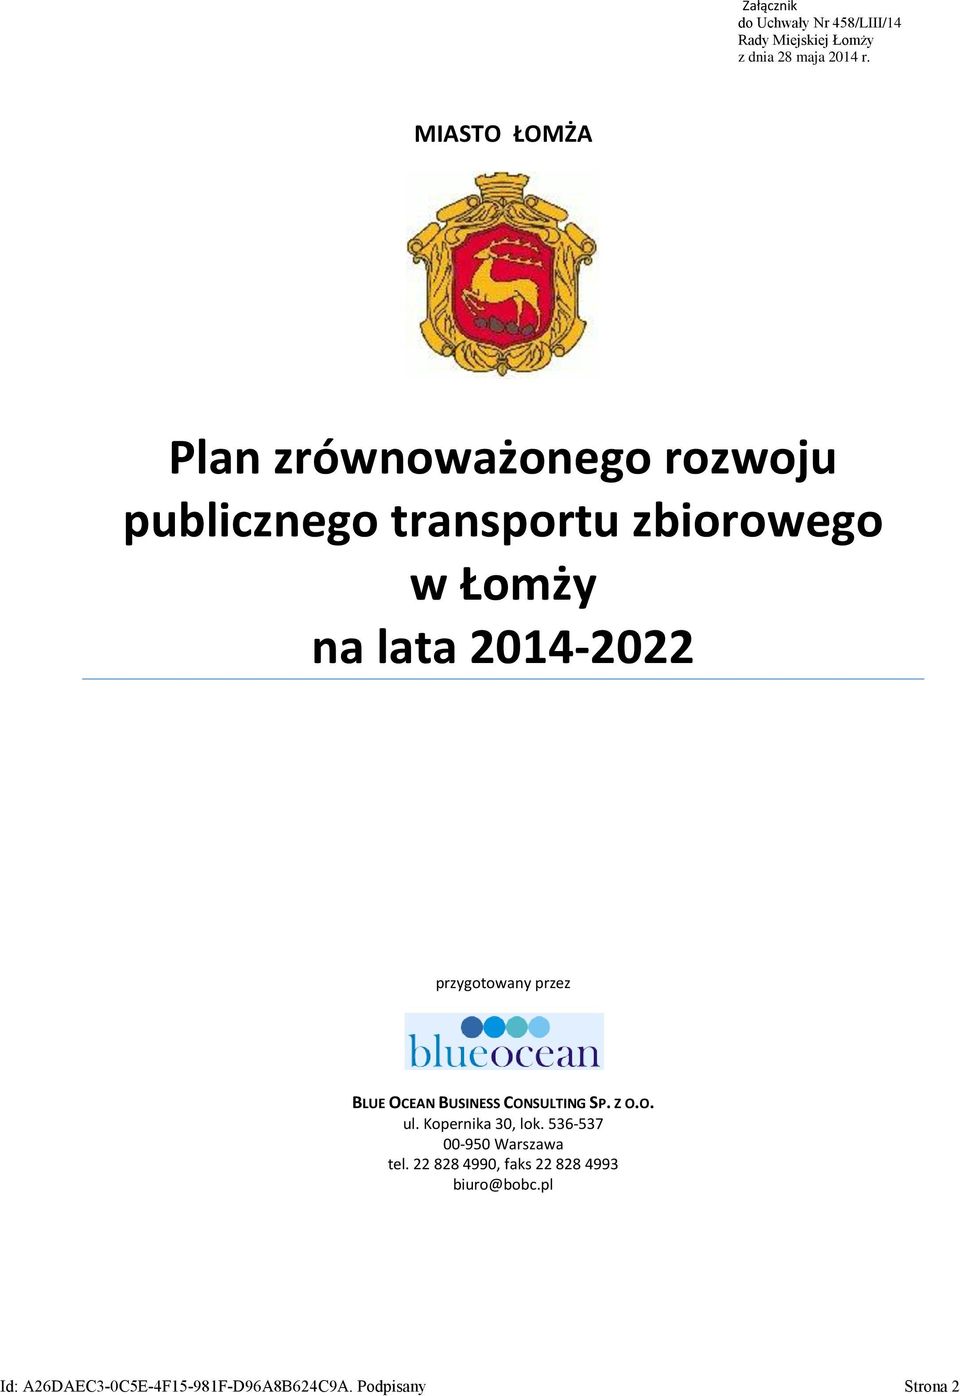 2014-2022 przygotowany przez BLUE OCEAN BUSINESS CONSULTING SP. Z O.O. ul. Kopernika 30, lok.